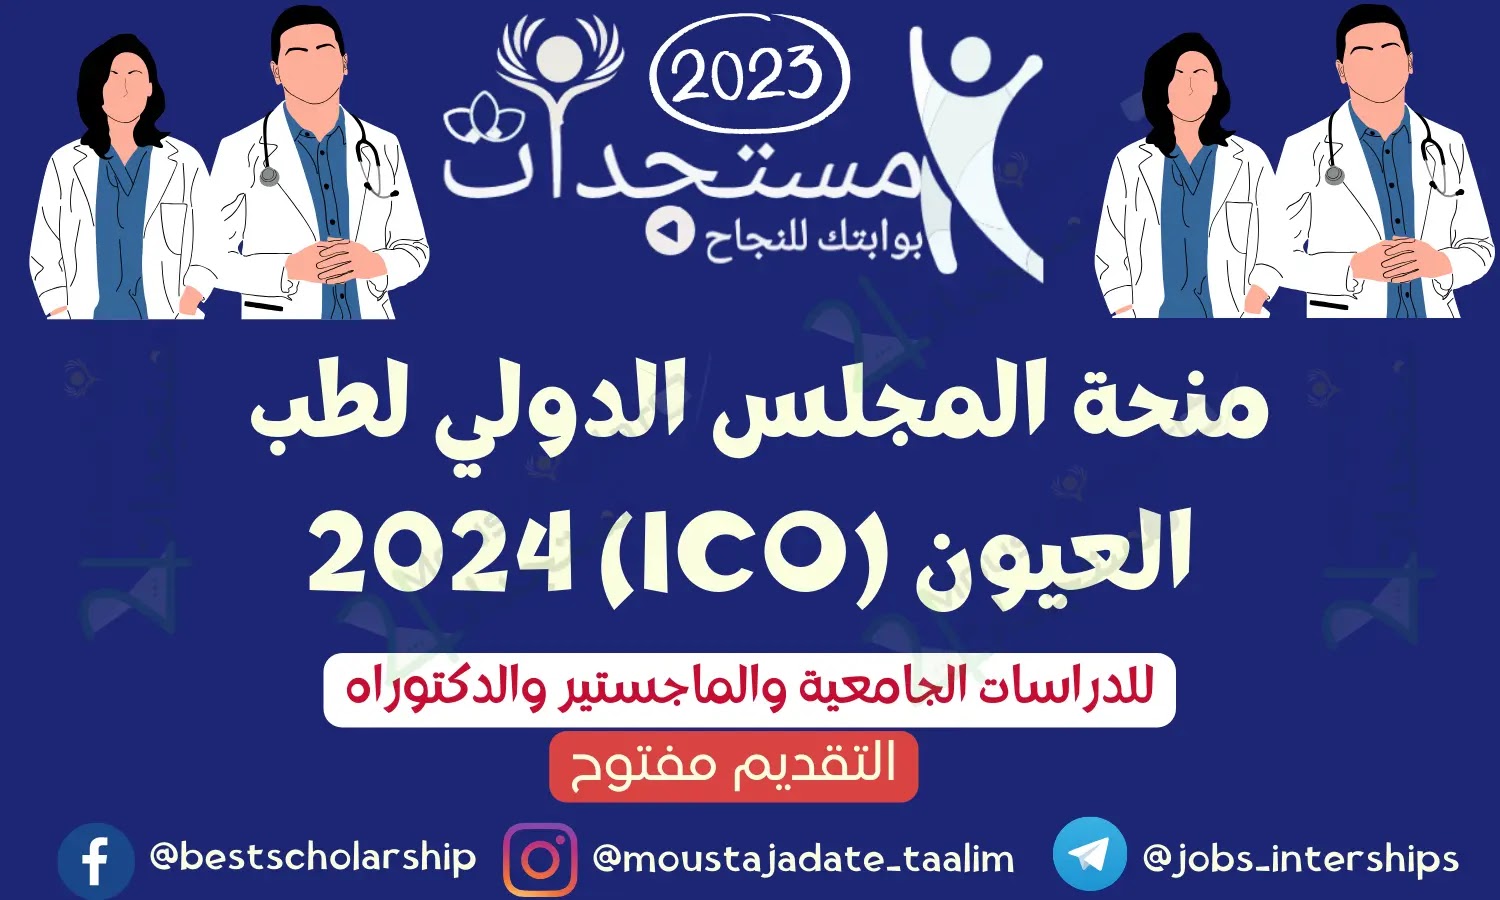 منحة المجلس الدولي لطب العيون (ICO) 2024